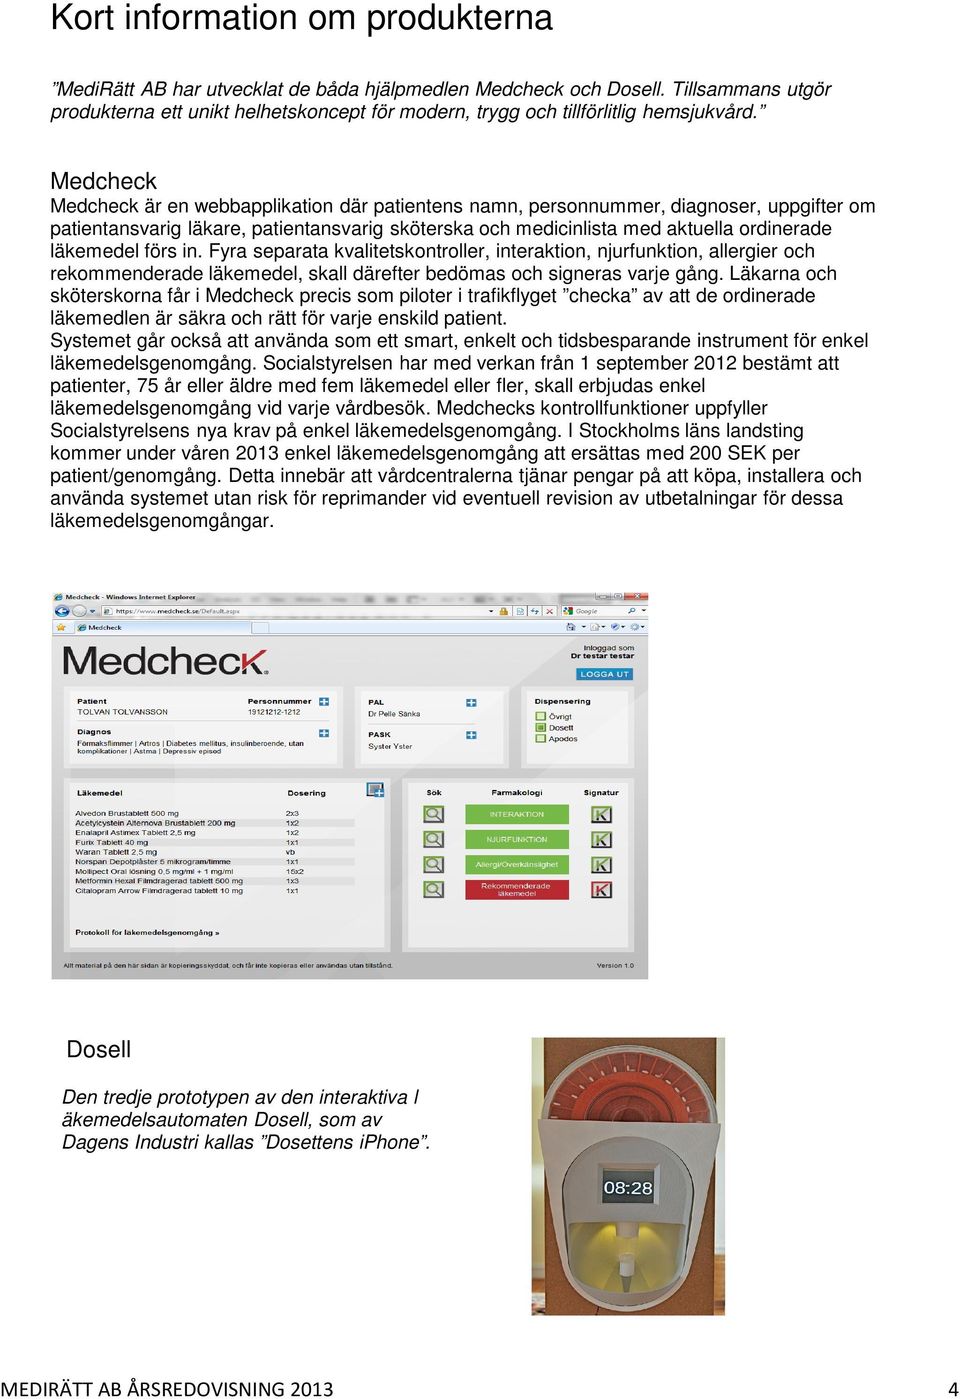 Medcheck Medcheck är en webbapplikation där patientens namn, personnummer, diagnoser, uppgifter om patientansvarig läkare, patientansvarig sköterska och medicinlista med aktuella ordinerade läkemedel